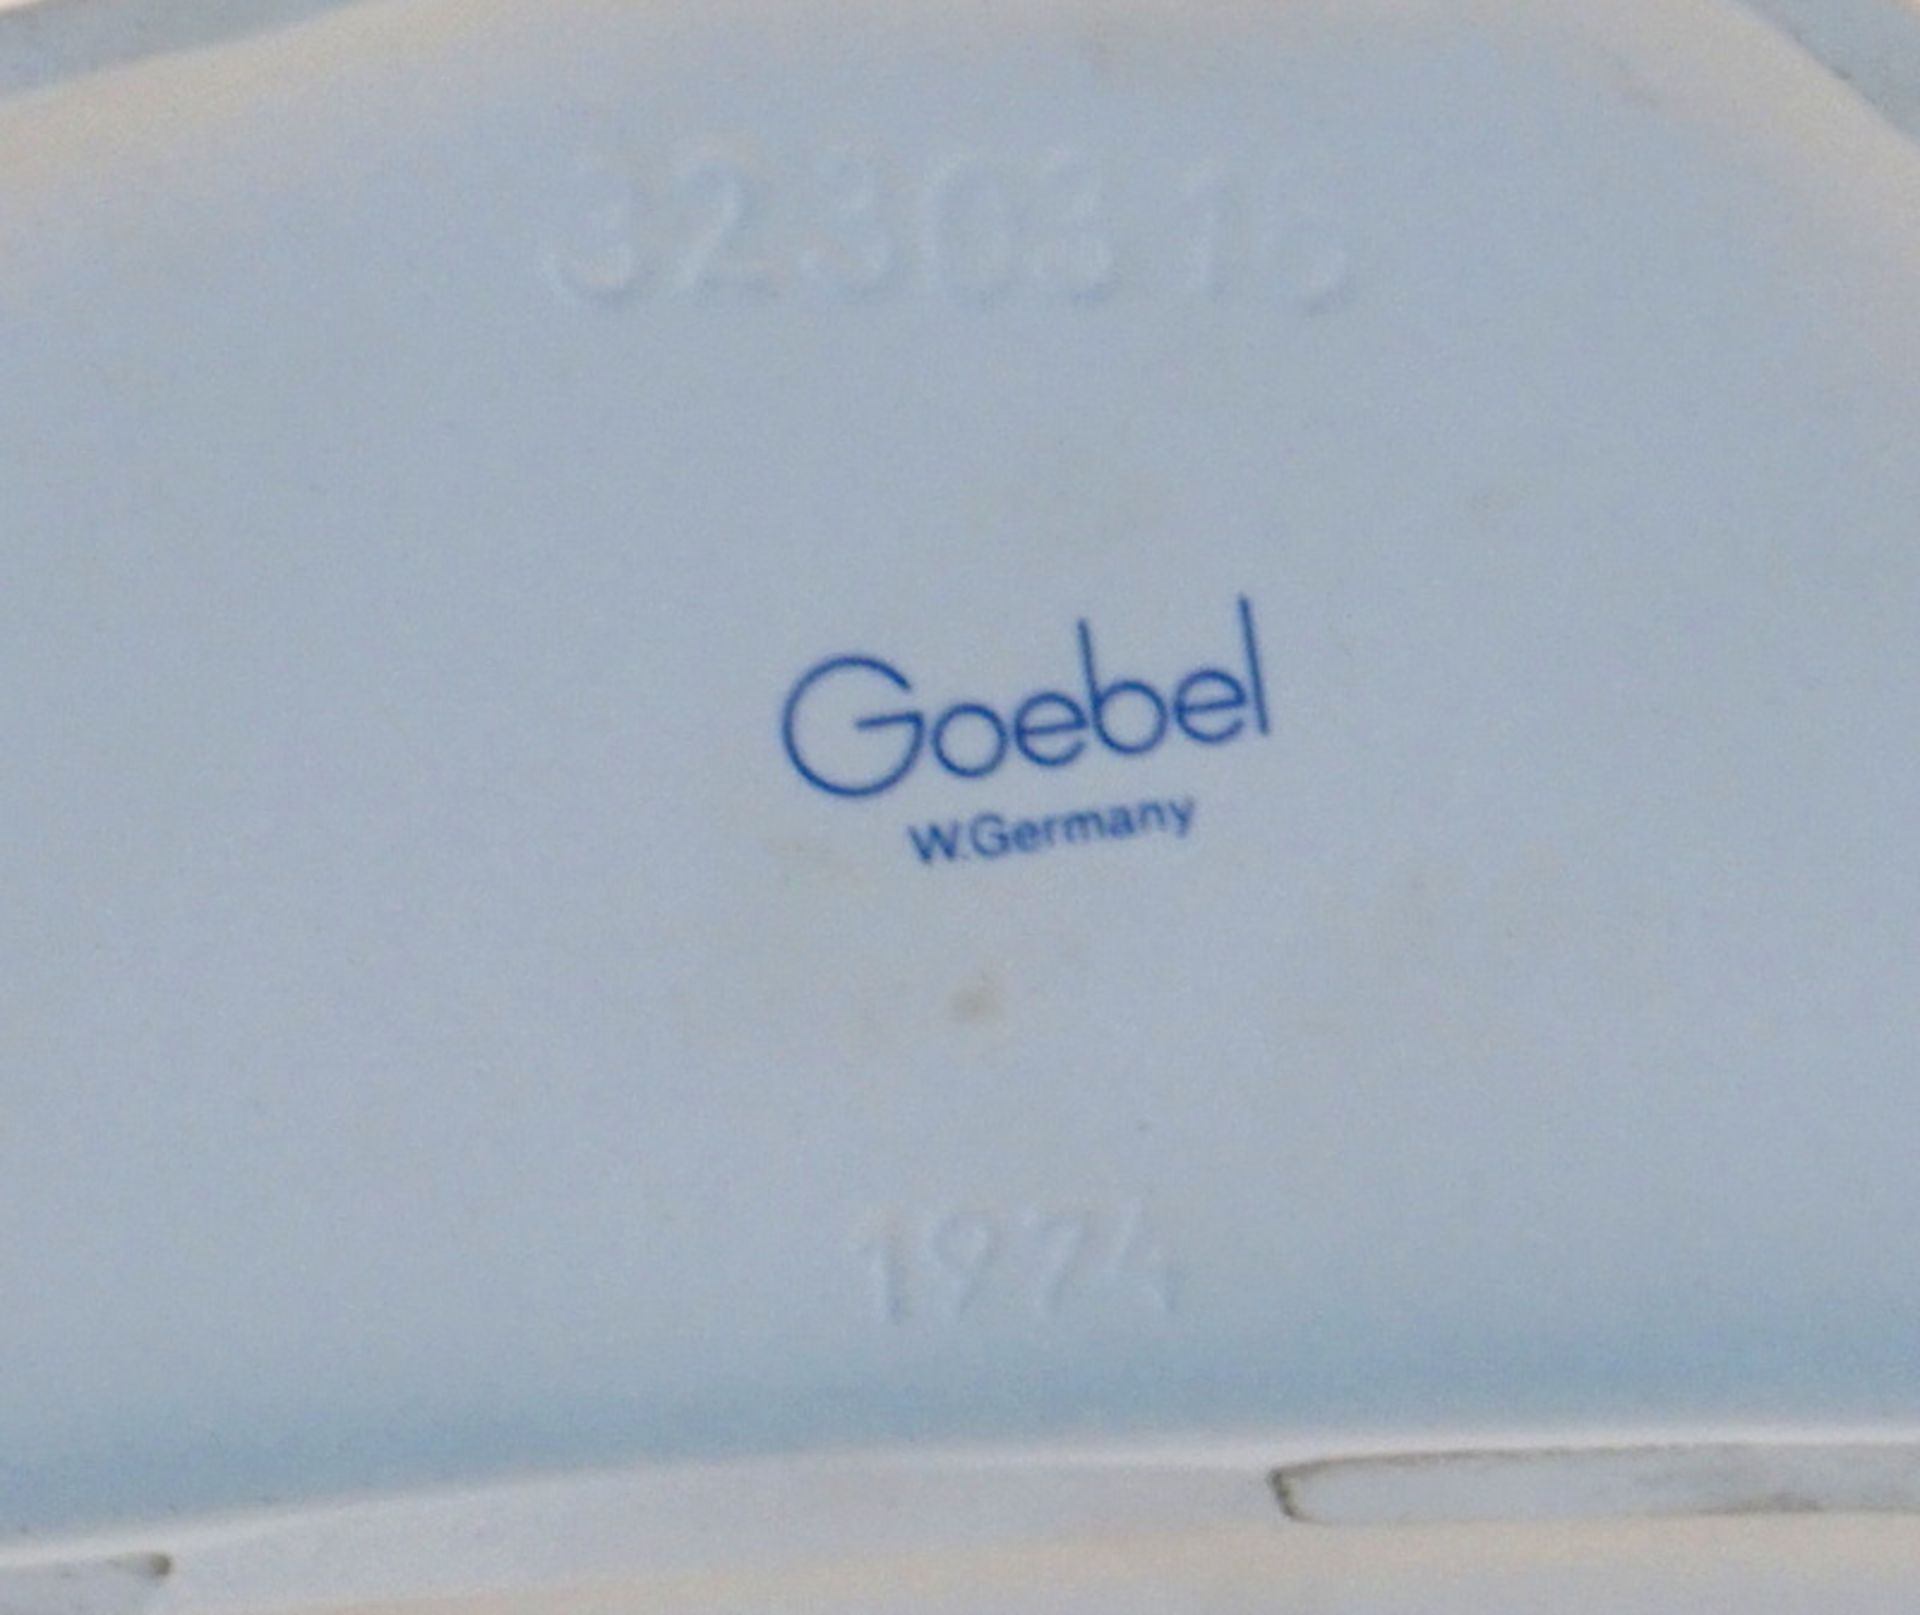 Goebel Porzellanfabrik: Stute mit Fohlen, sign. G. Bochmann, Mod 3230318, dat. 1974 - Image 2 of 3